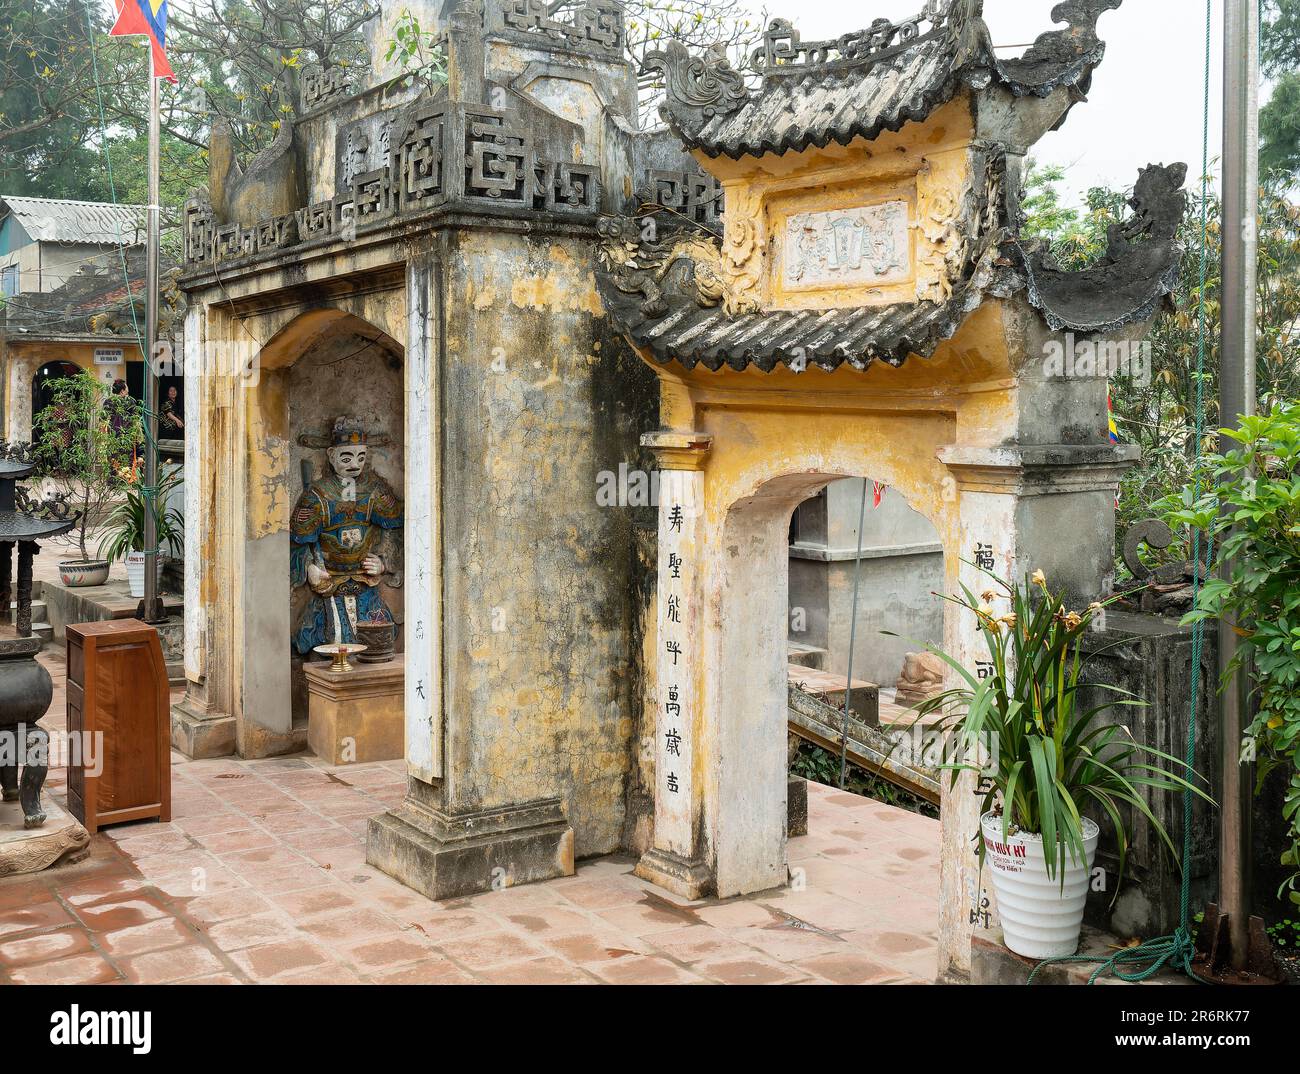 Den Doc Cuoc, Tam Toa Thanh Mau, un petit temple pour Thanh, Thanh Giong à l'extrémité sud de Sam son Beach dans la province de Thanh Hoa au Vietnam. THA Banque D'Images